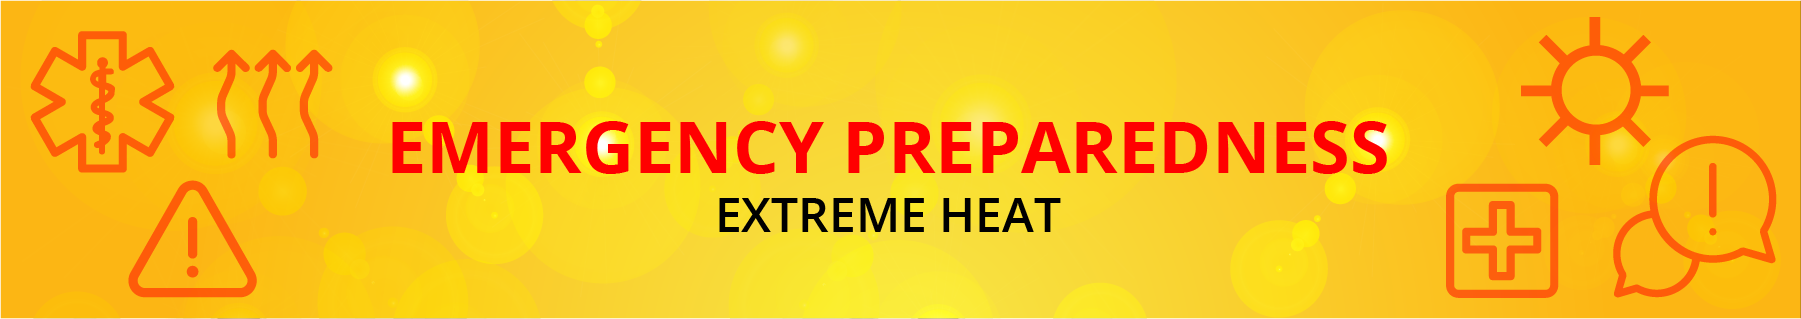 Emergency Preparedness Extreme Heat banner